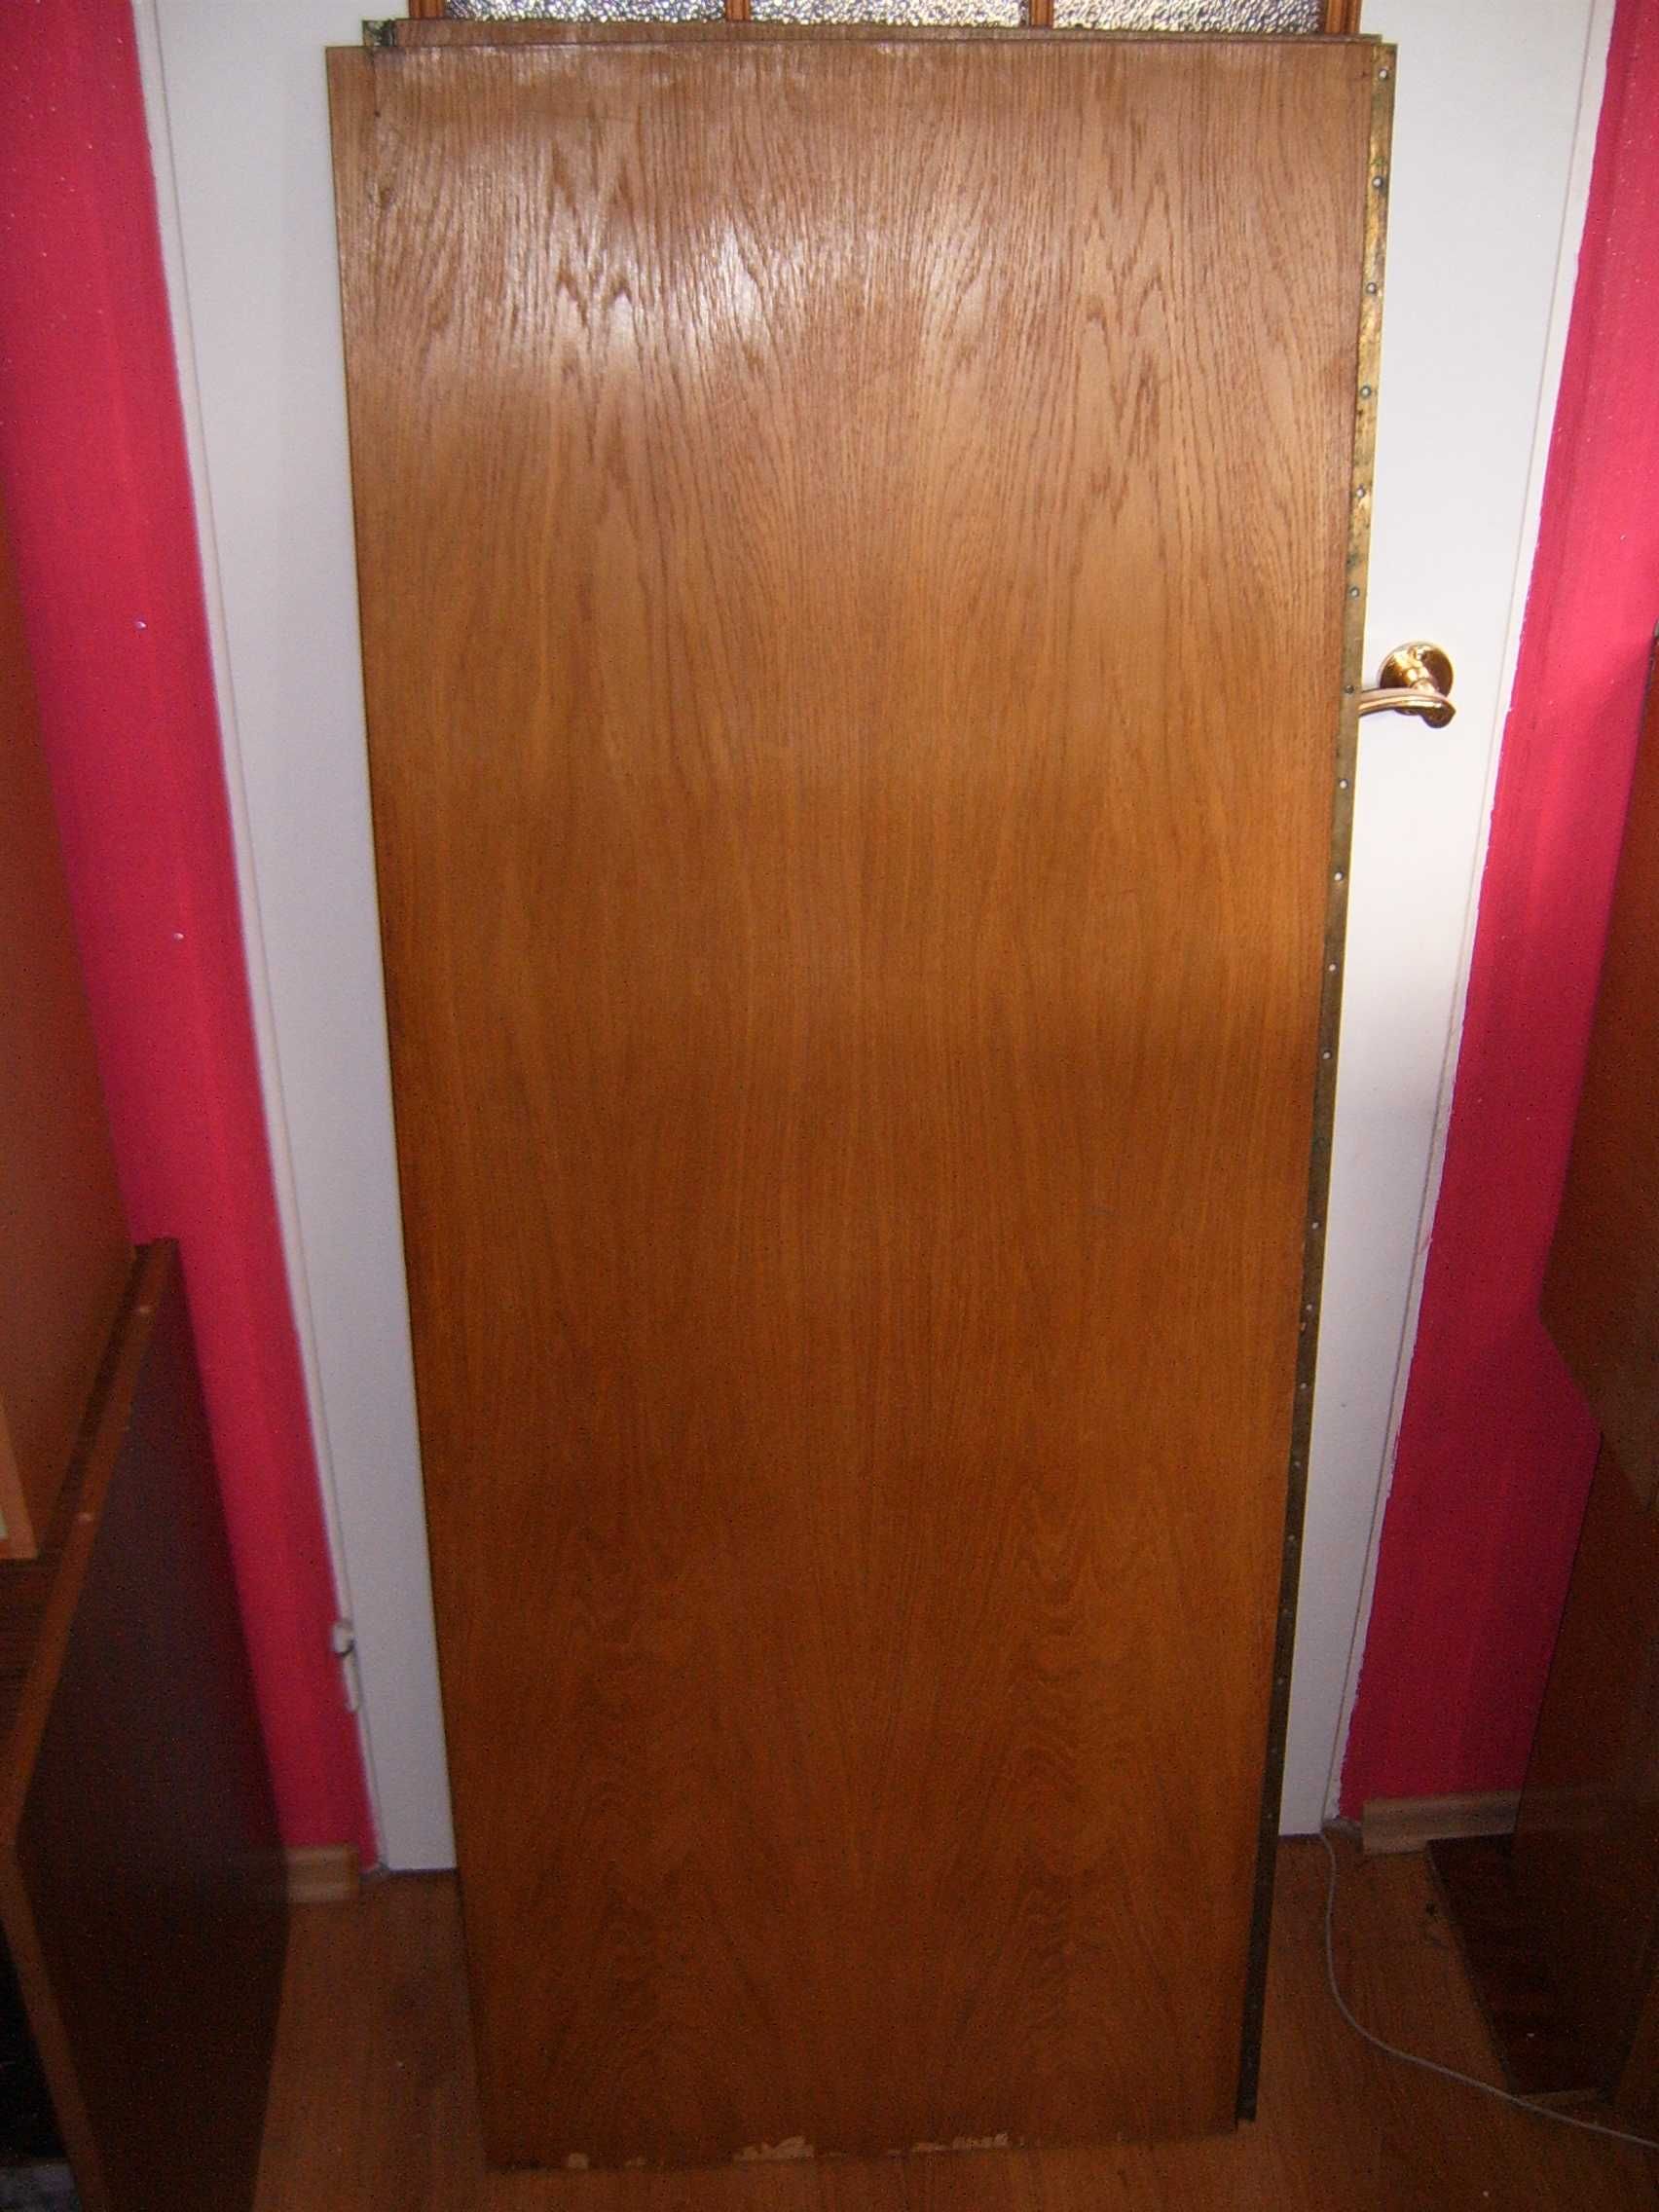 drzwi szafa zawiasy mosiezne stare retro PRL drazek uchwyty zamek